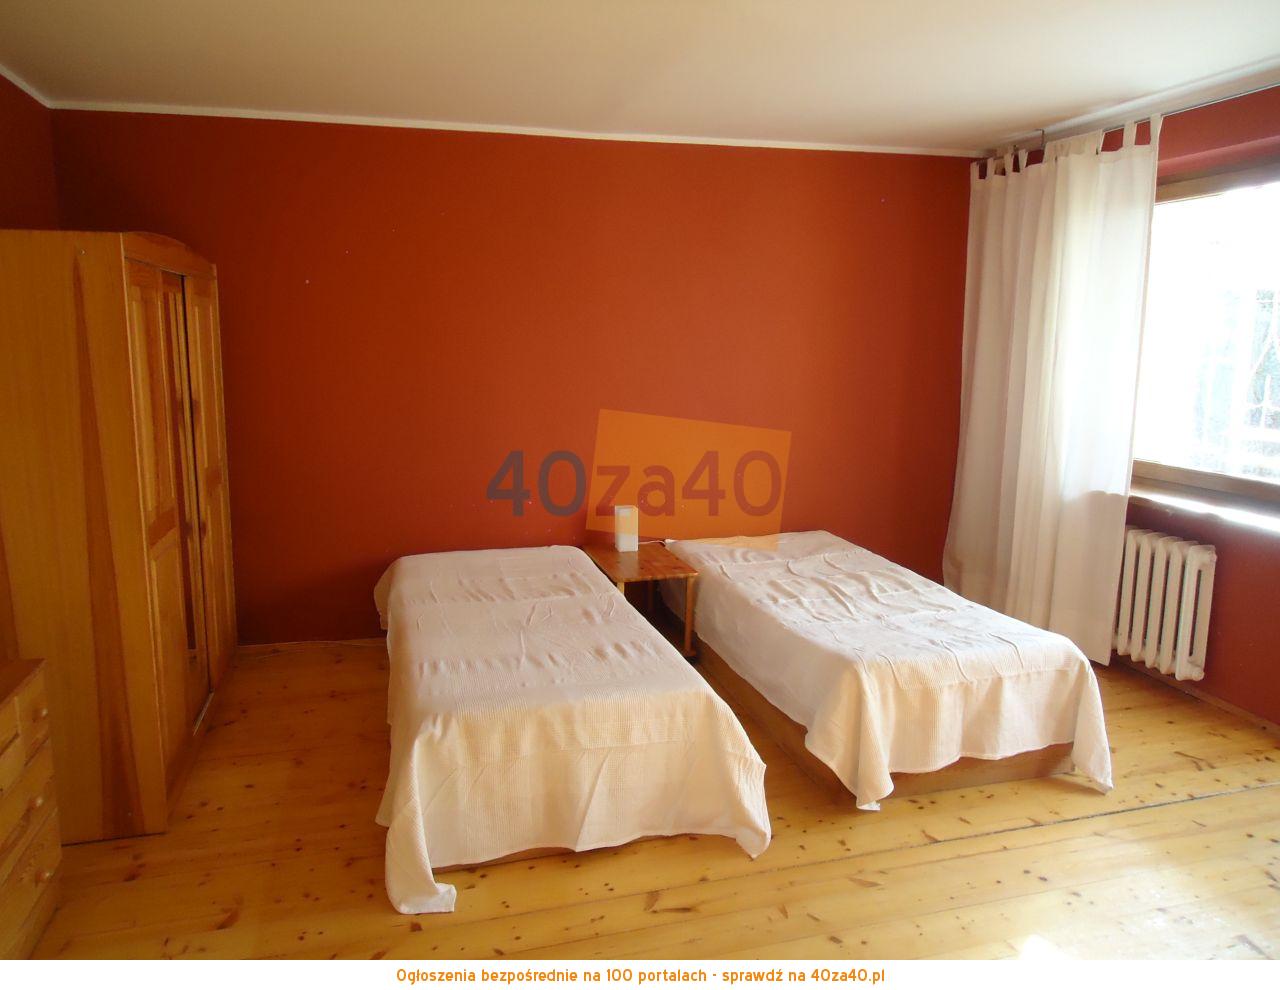 Mieszkanie do wynajęcia, pokoje: 3, cena: 150,00 PLN, Gdańsk, kontakt: 607 628 410